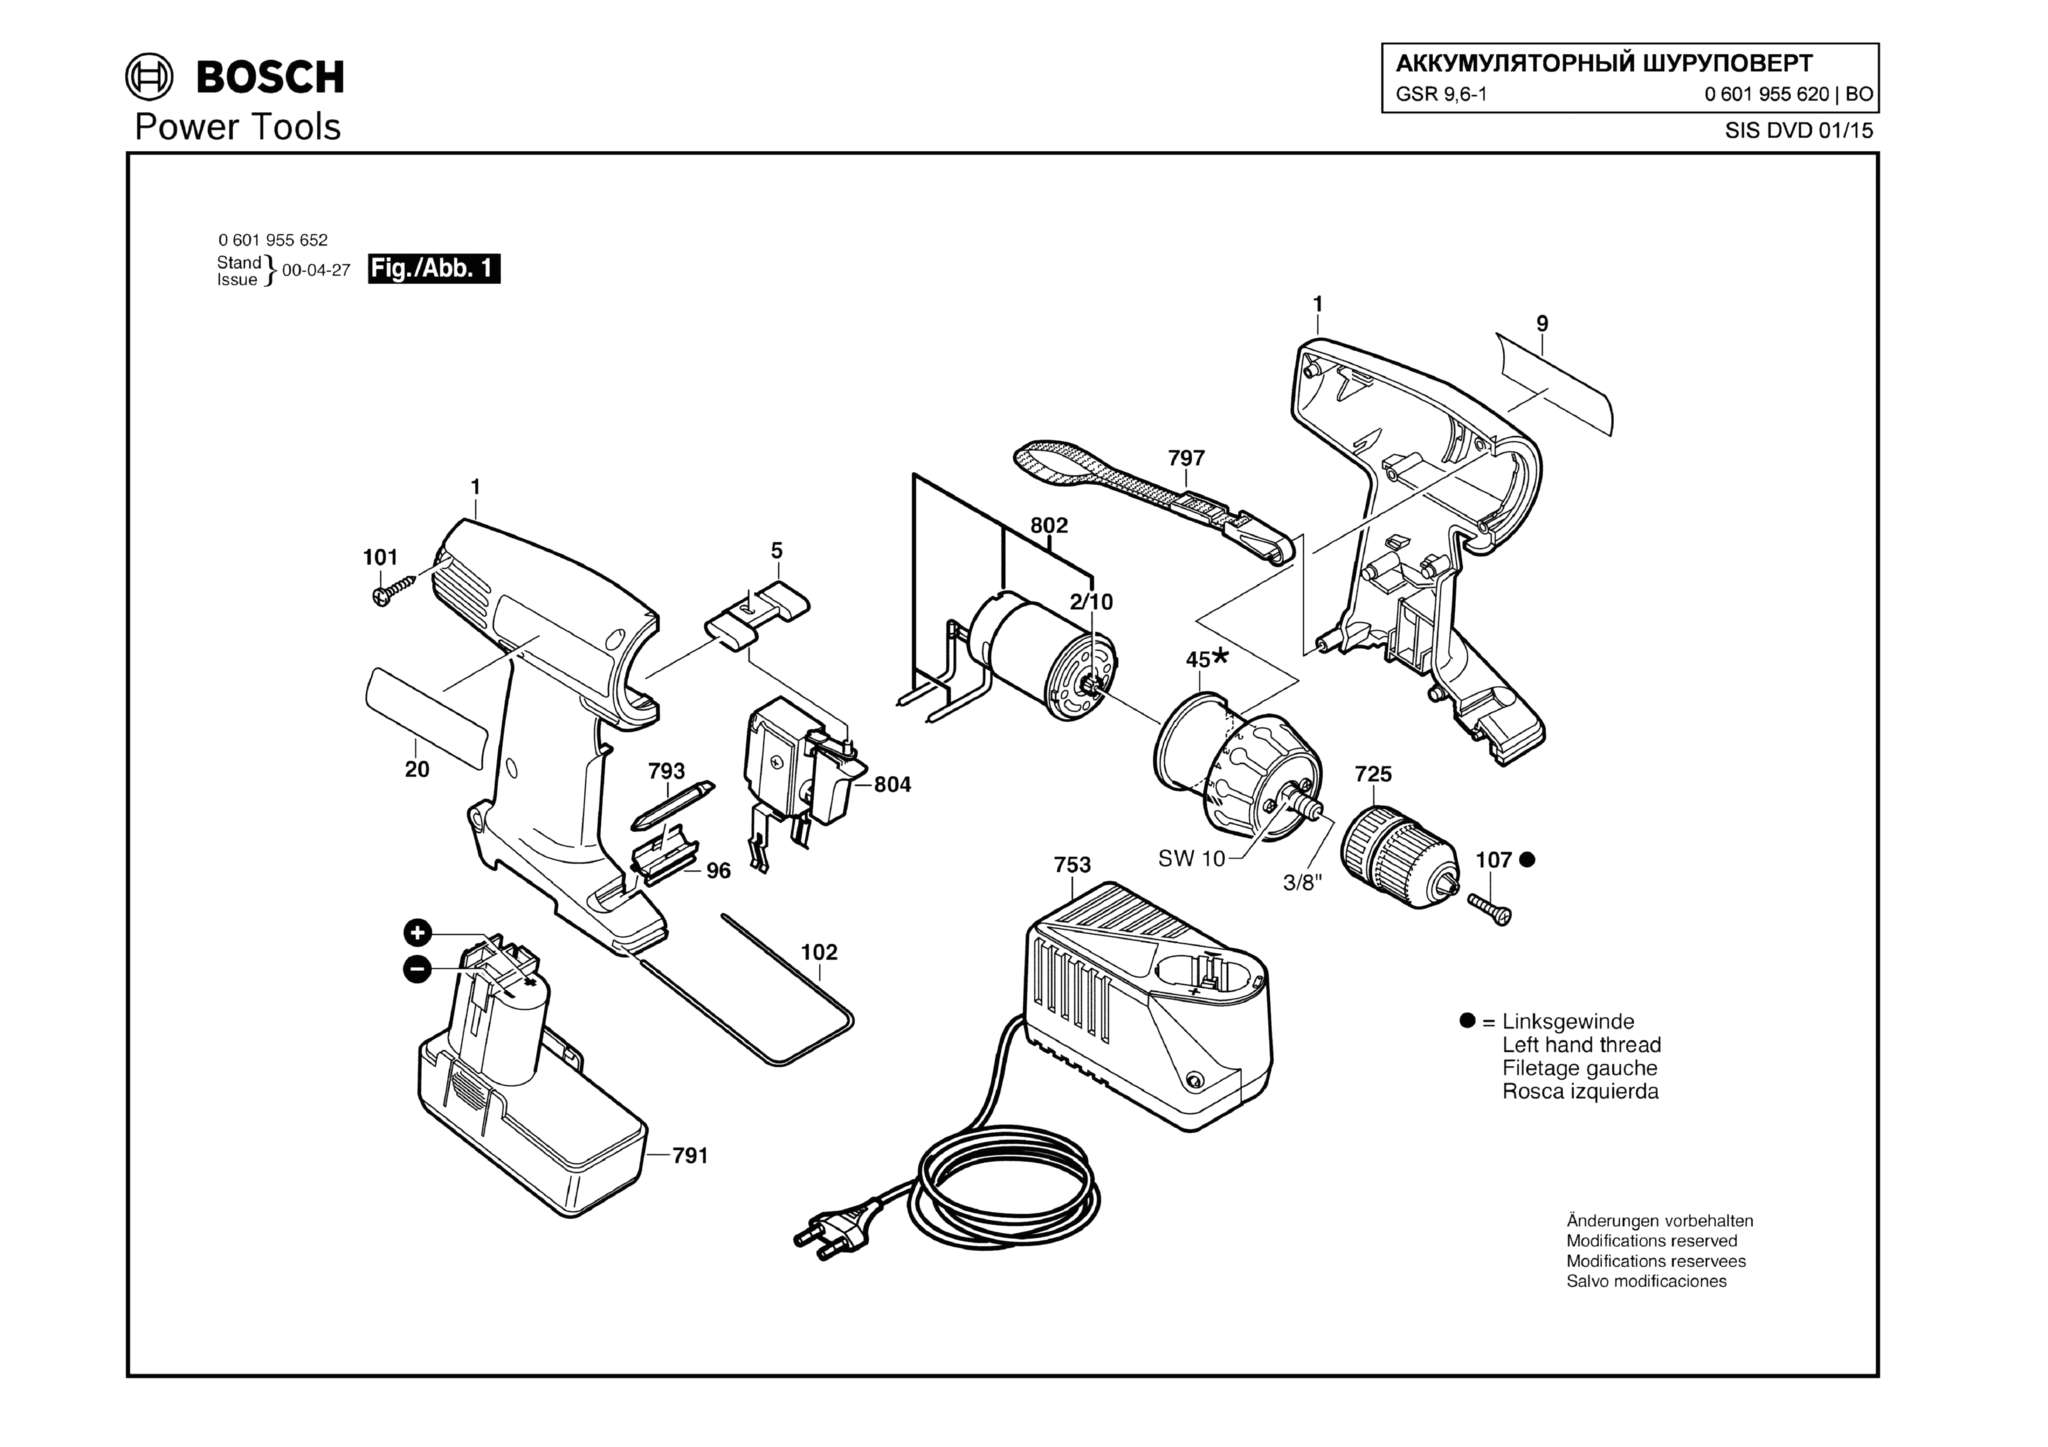 Запчасти, схема и деталировка Bosch GSR 9,6-1 (ТИП 0601955620)